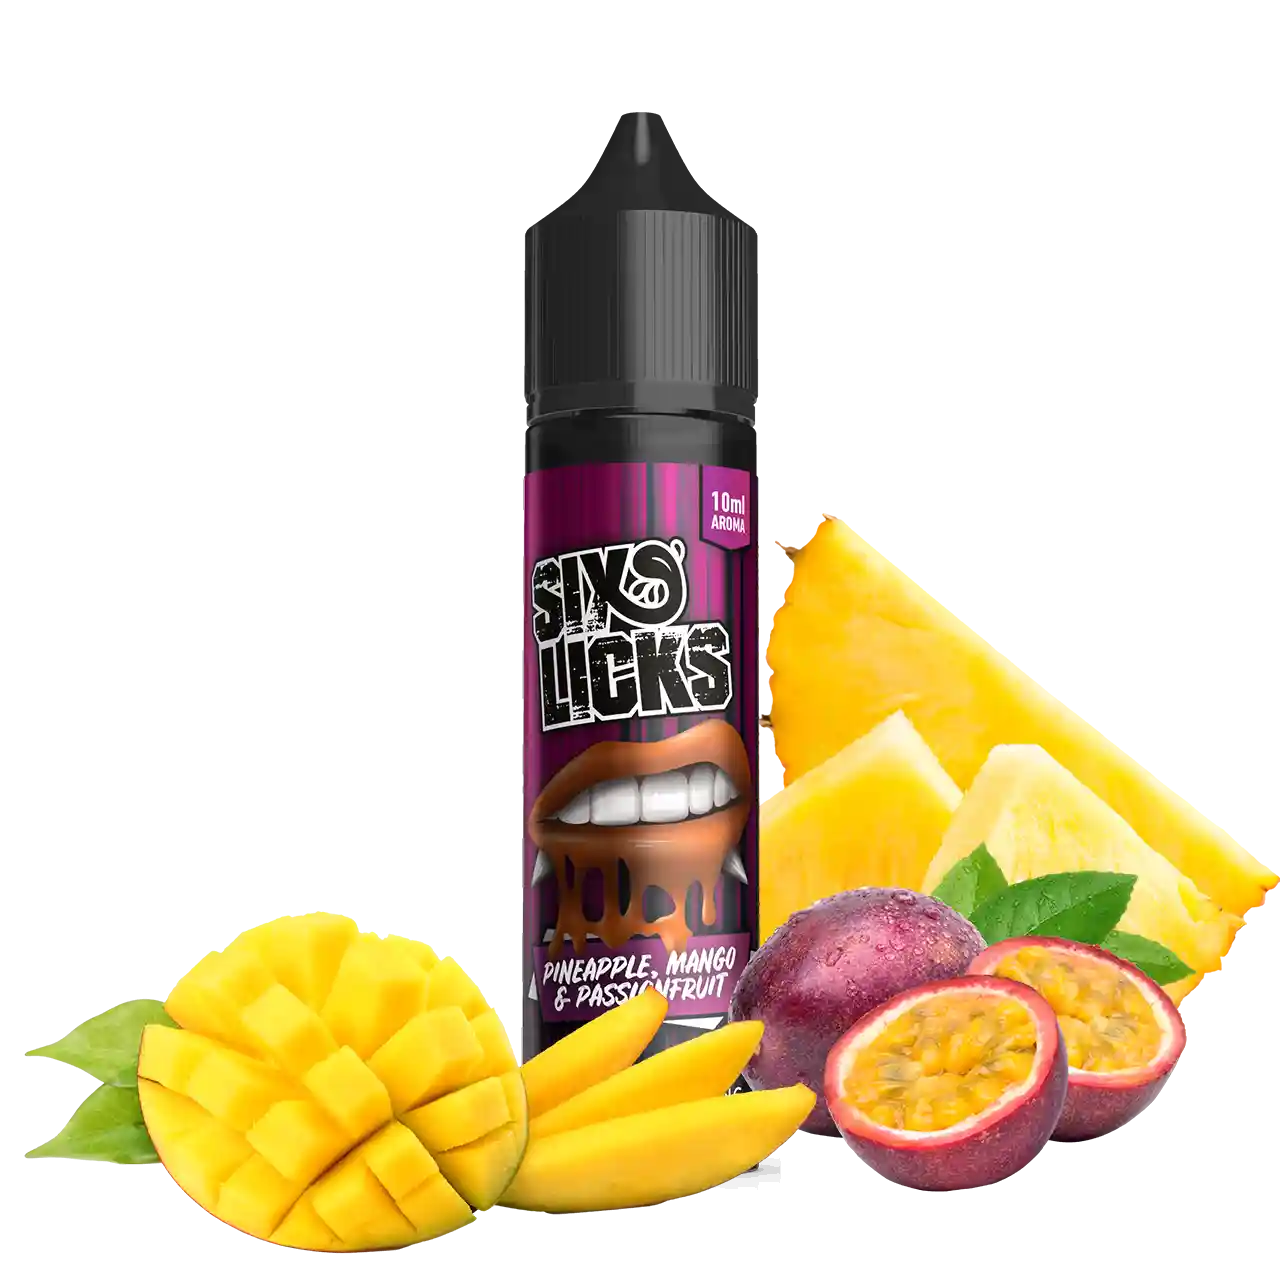 Six Licks Pineapple Mango Passionfruit Aroma Longfill